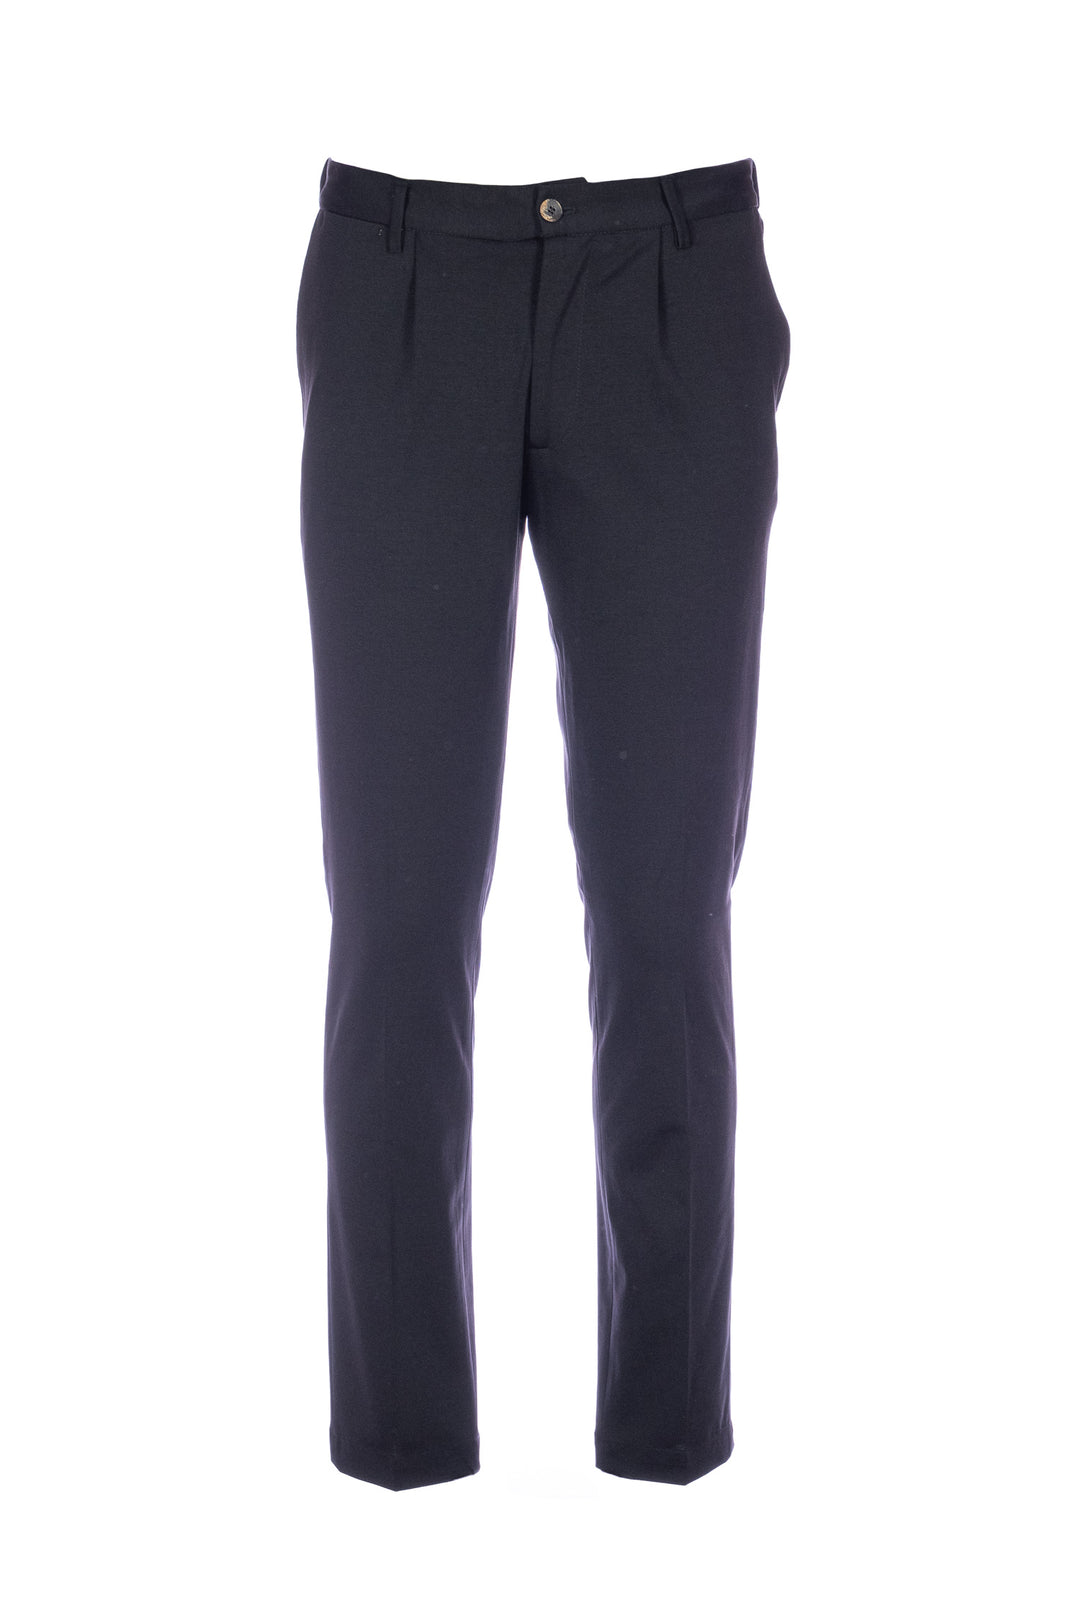 DEVORE Pantalone nero in cotone stretch con vita elastica e una pince - Mancinelli 1954